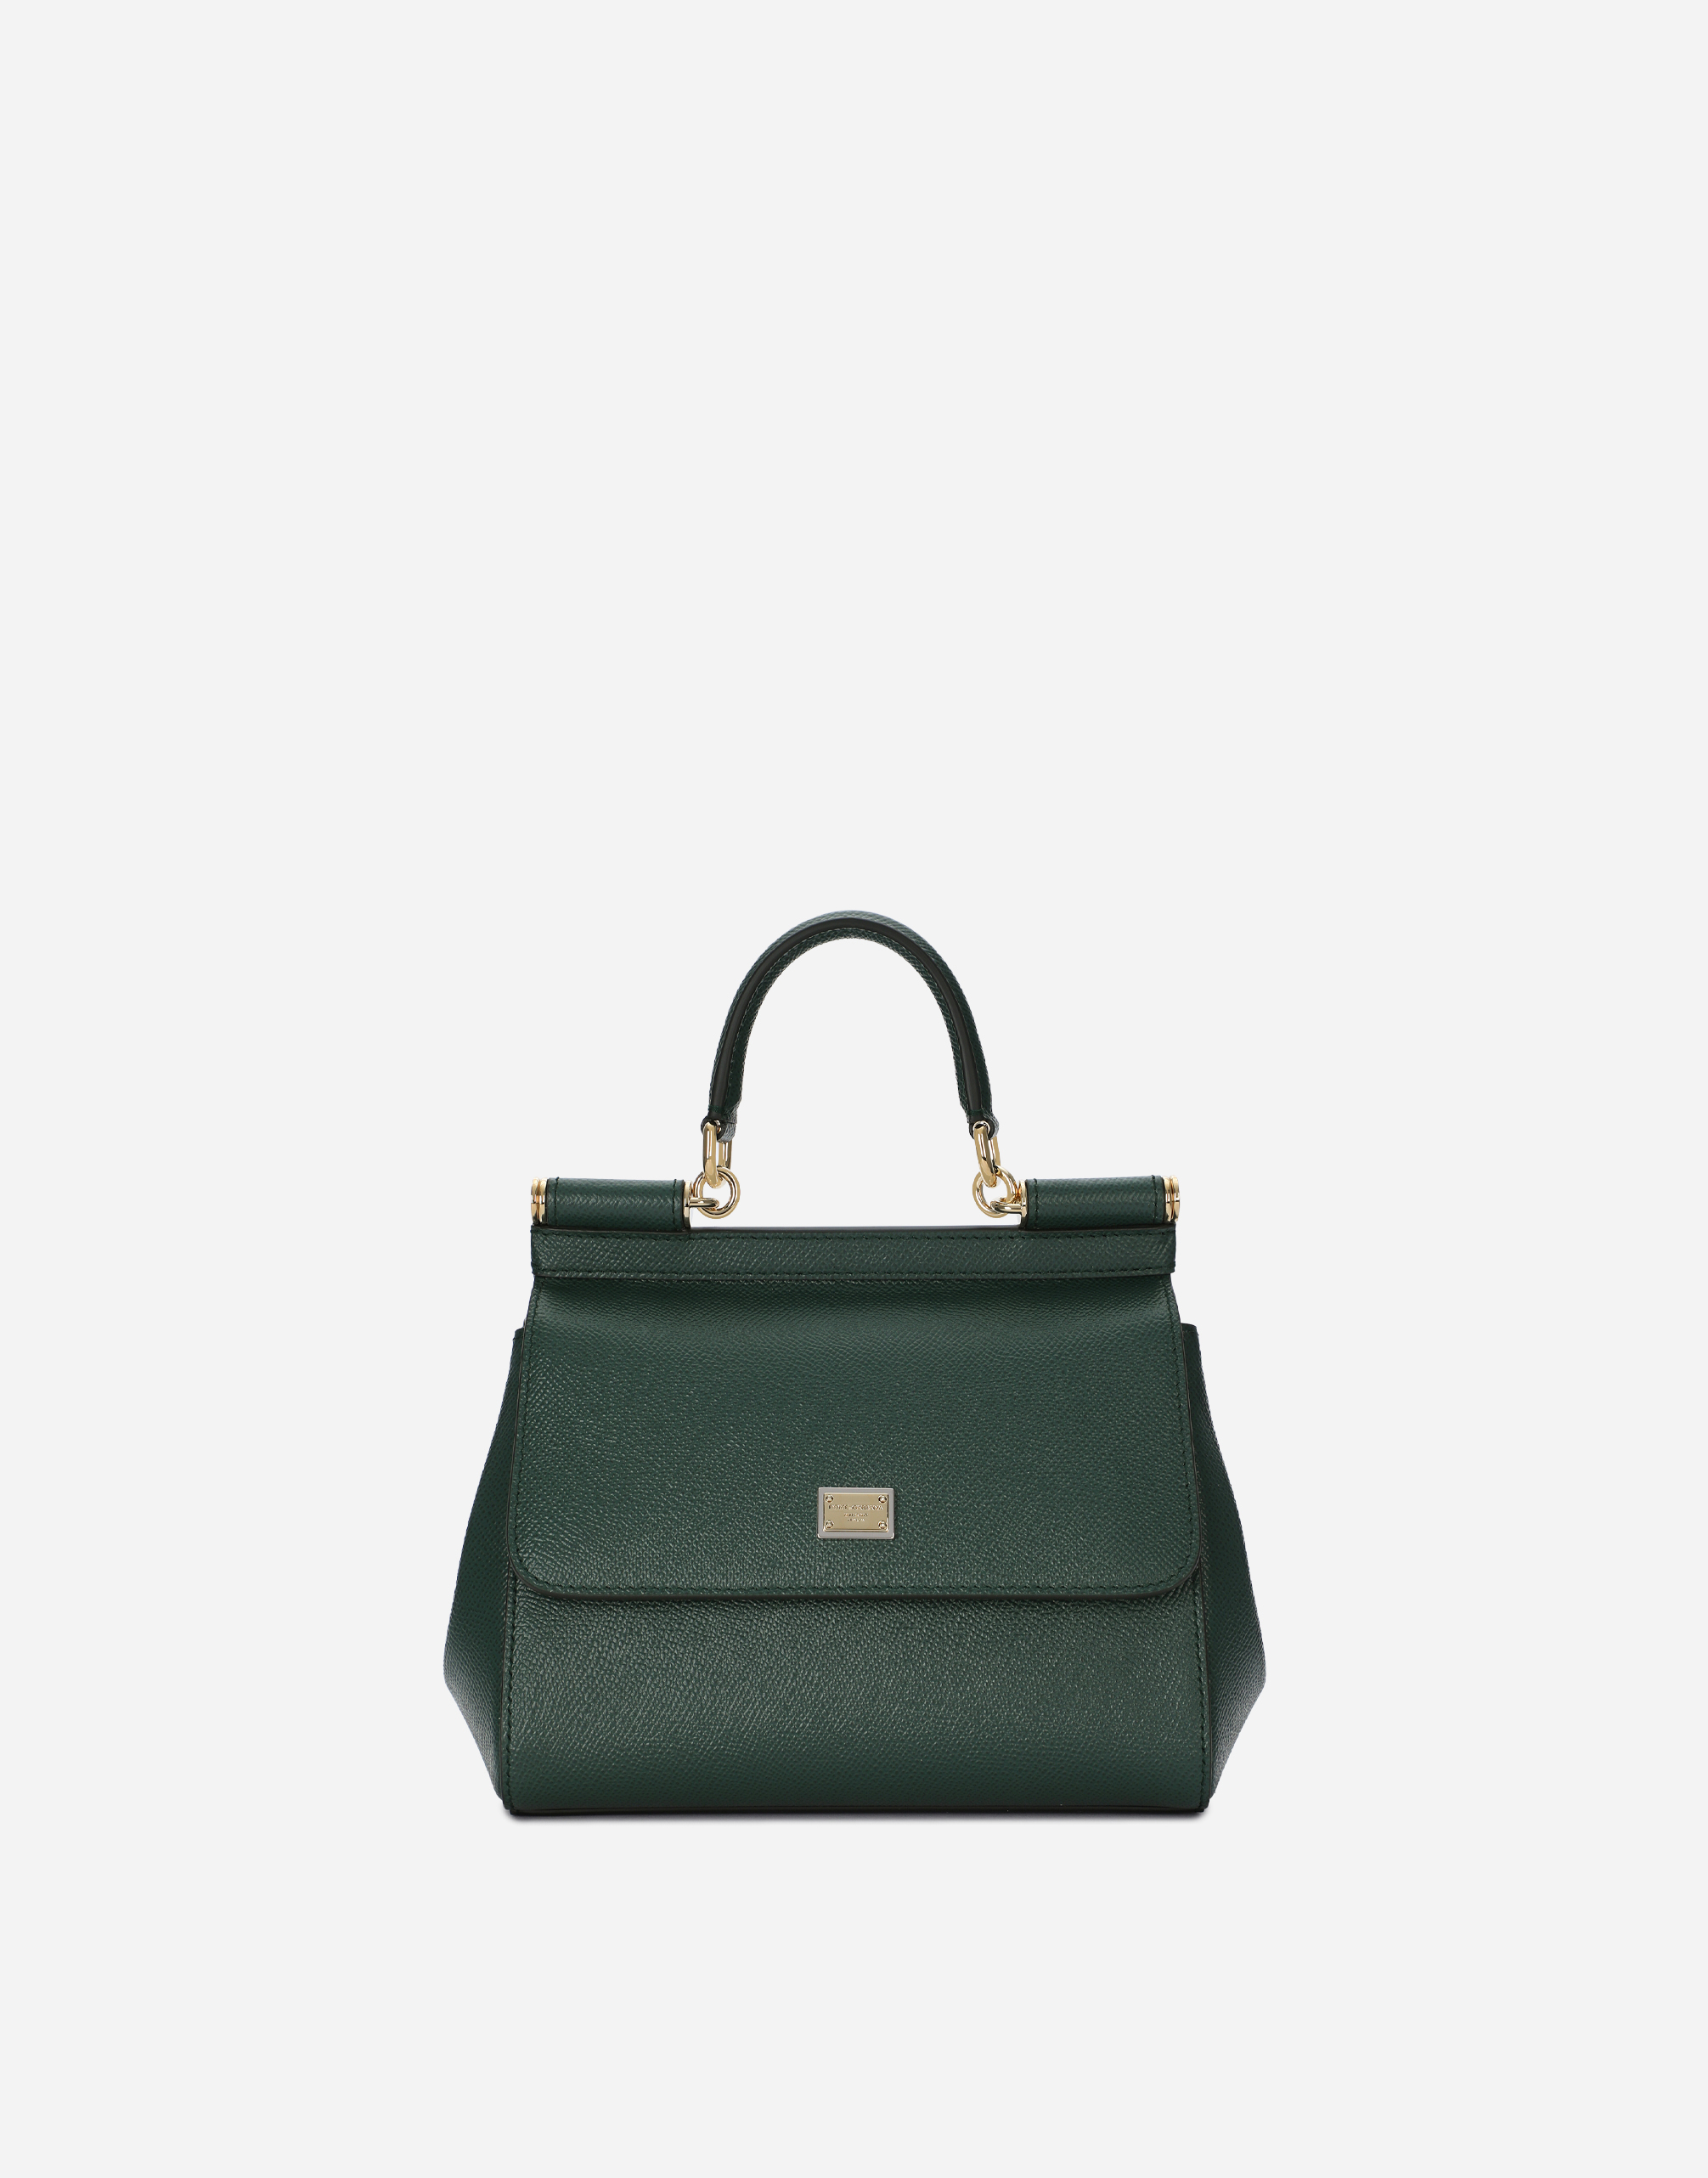 Medium Sicily handbag in Green